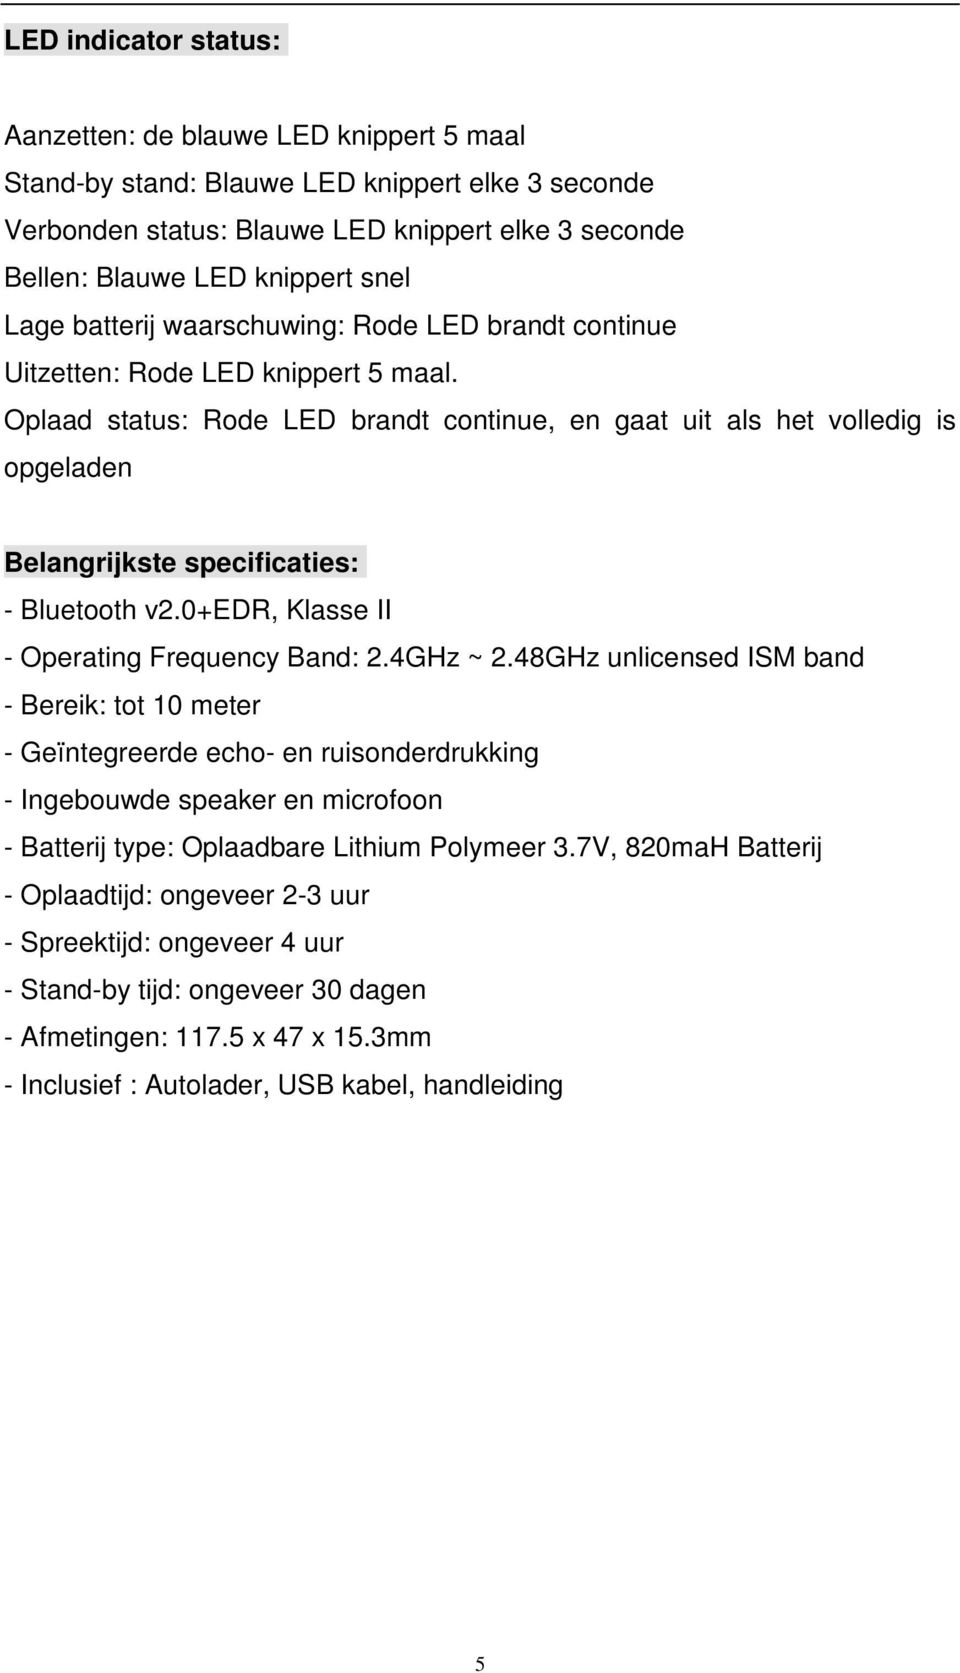 Oplaad status: Rode LED brandt continue, en gaat uit als het volledig is opgeladen Belangrijkste specificaties: - Bluetooth v2.0+edr, Klasse II - Operating Frequency Band: 2.4GHz ~ 2.